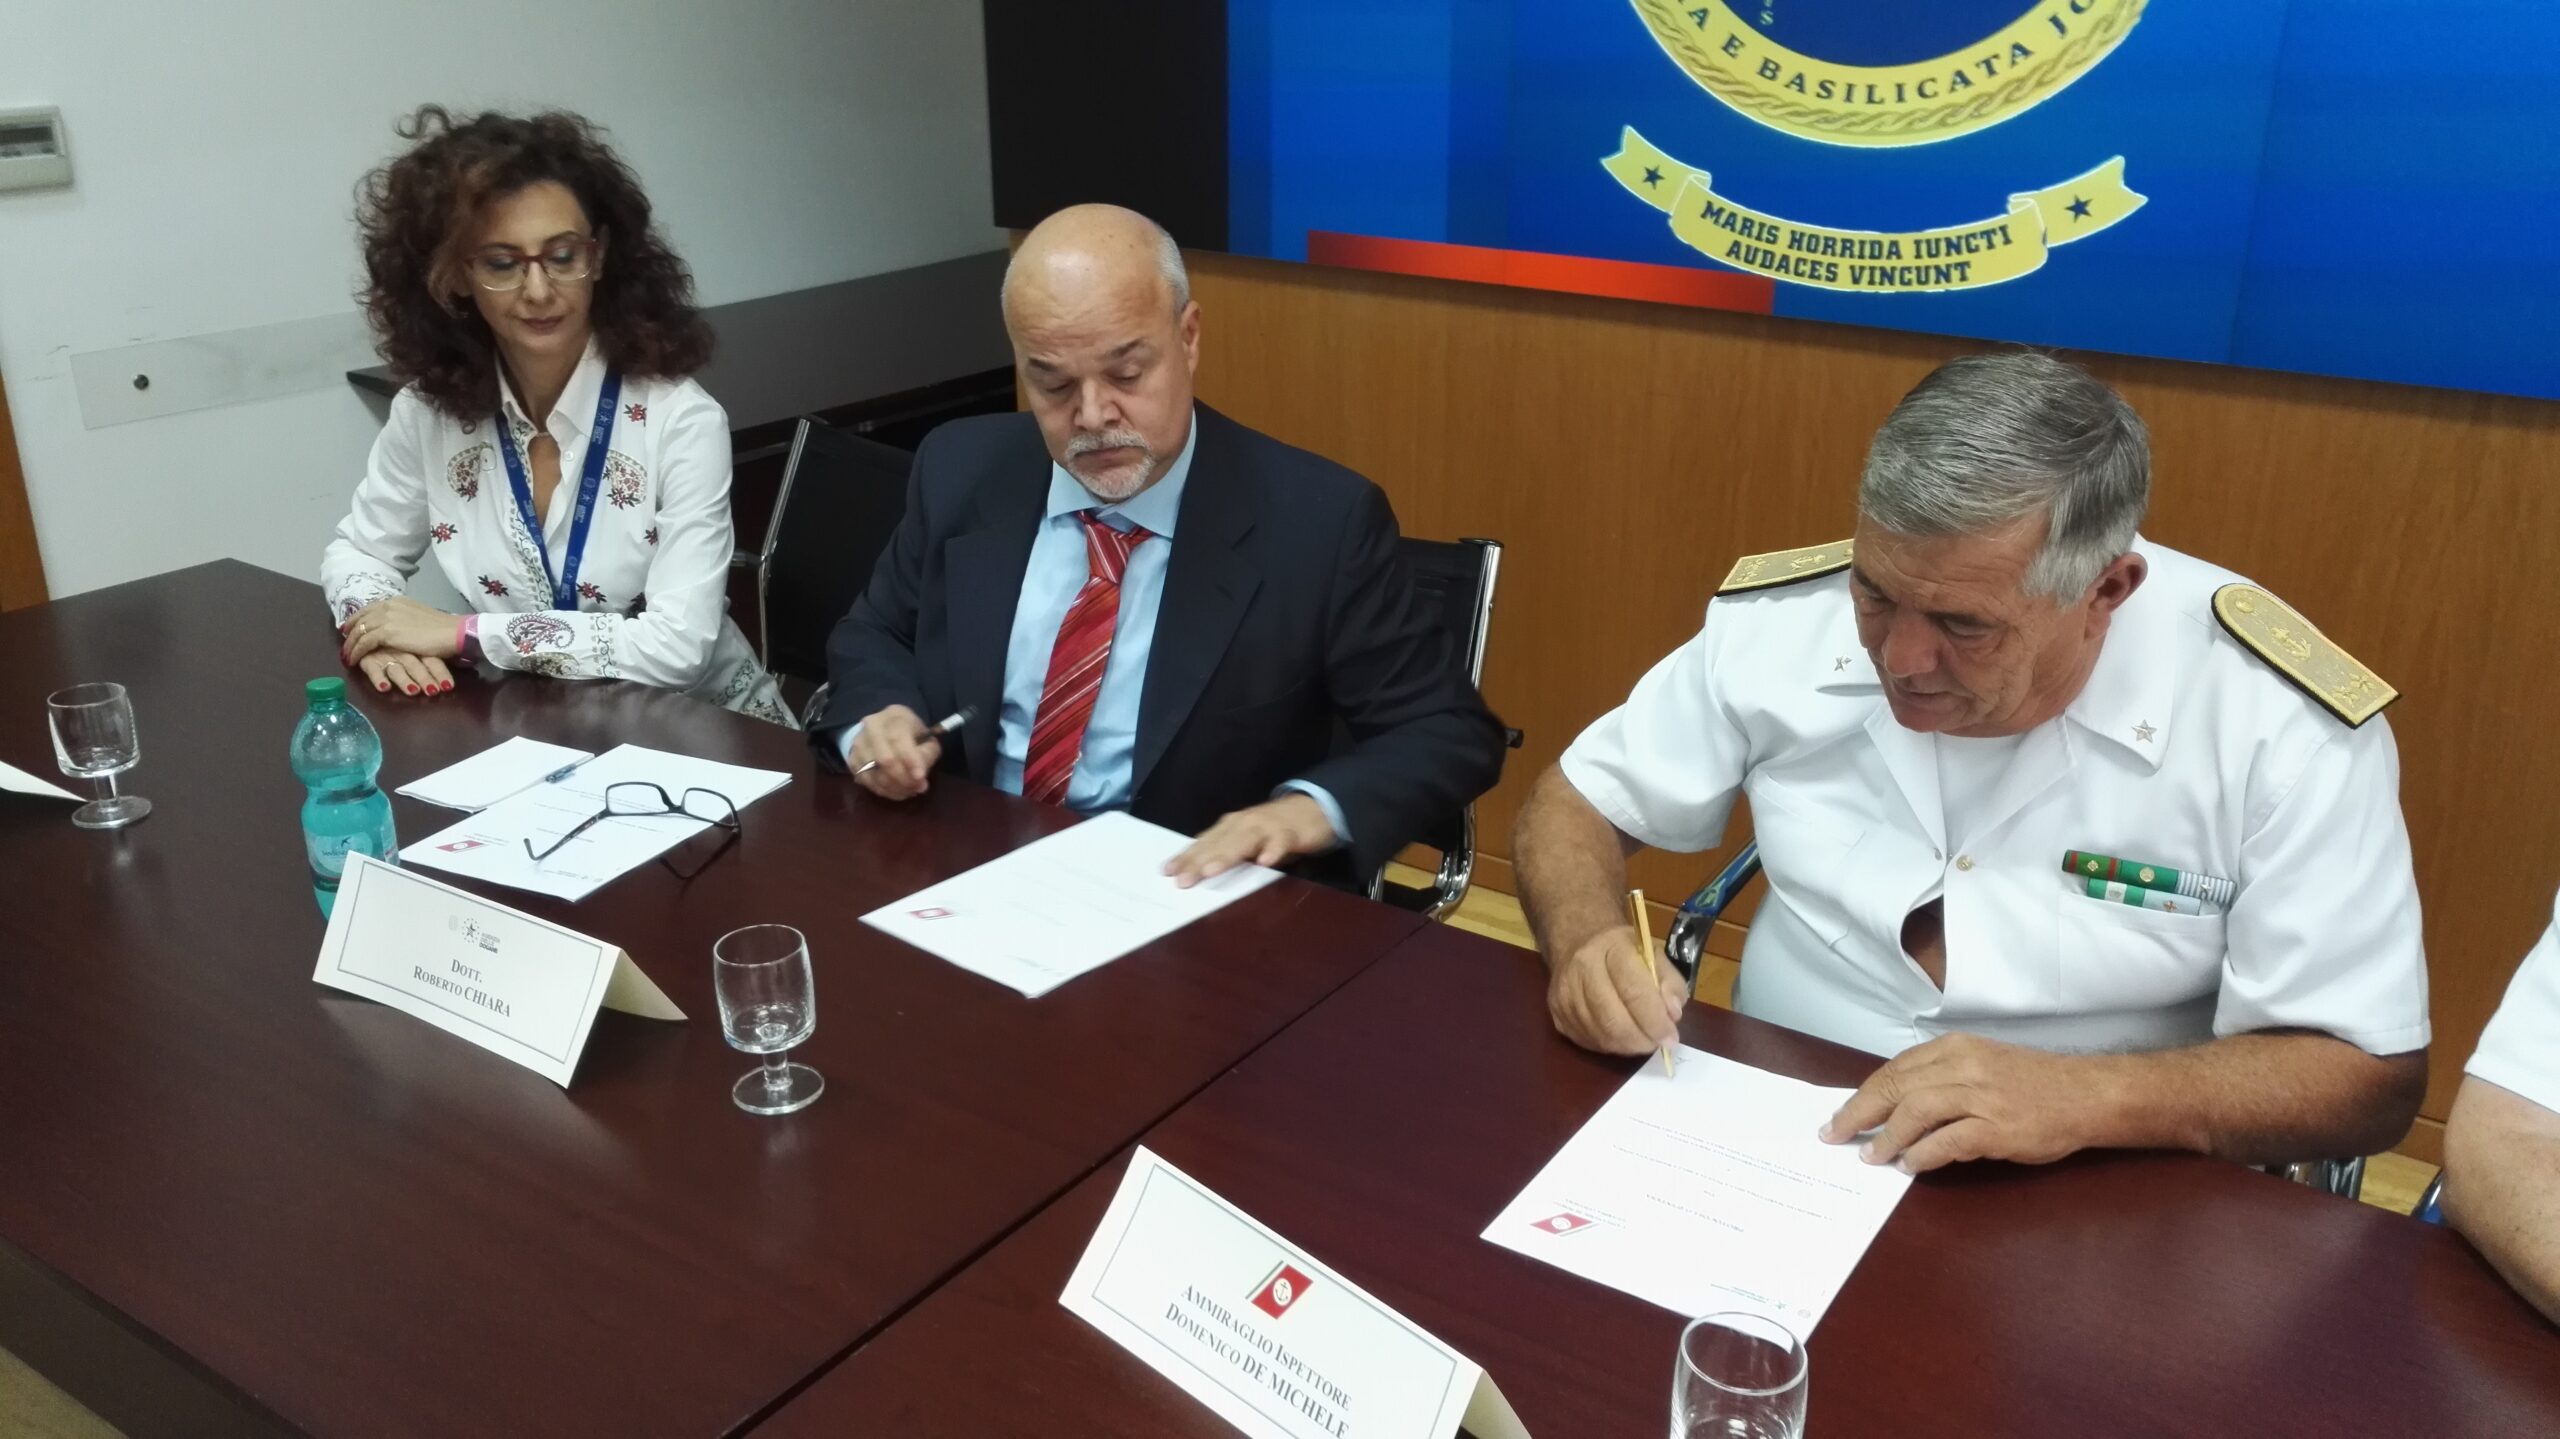 La firma del protocollo d'intesa alla Capitaneria di porto di Bari